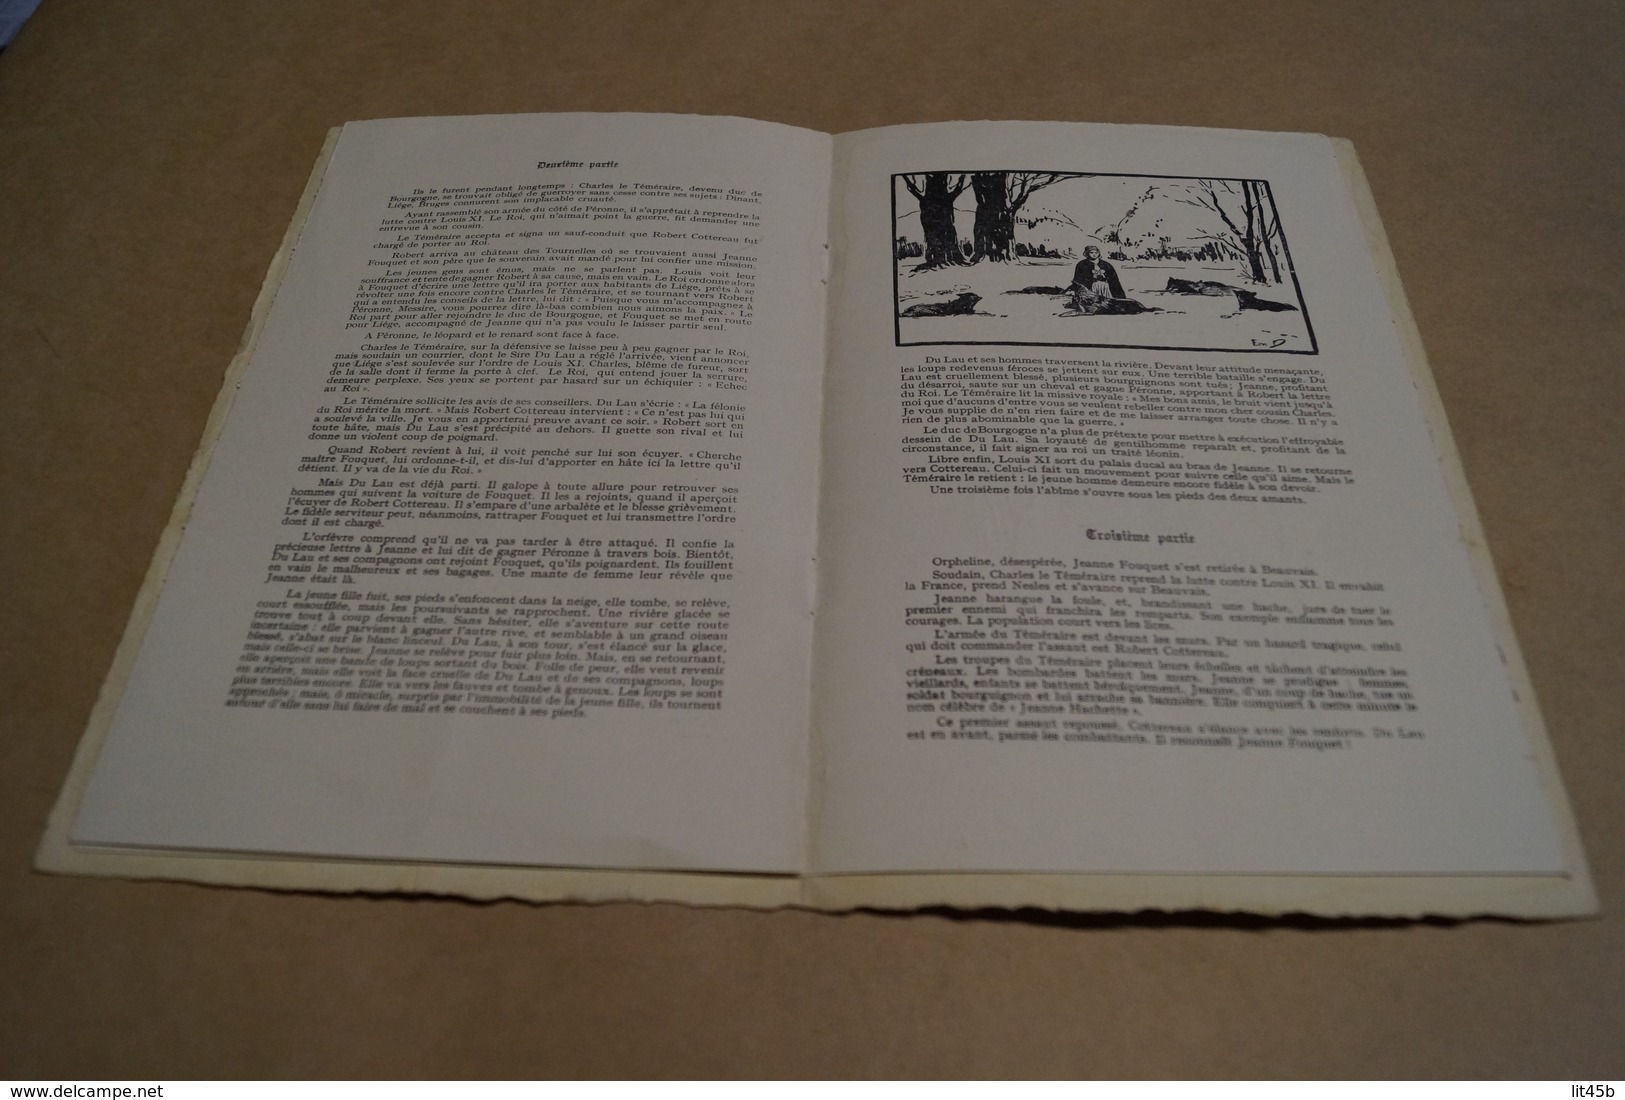 Miracle des loups,au Coliséum,oeuvre des artistes,1925,complet 8 pages,25,5 Cm. sur 16 Cm.